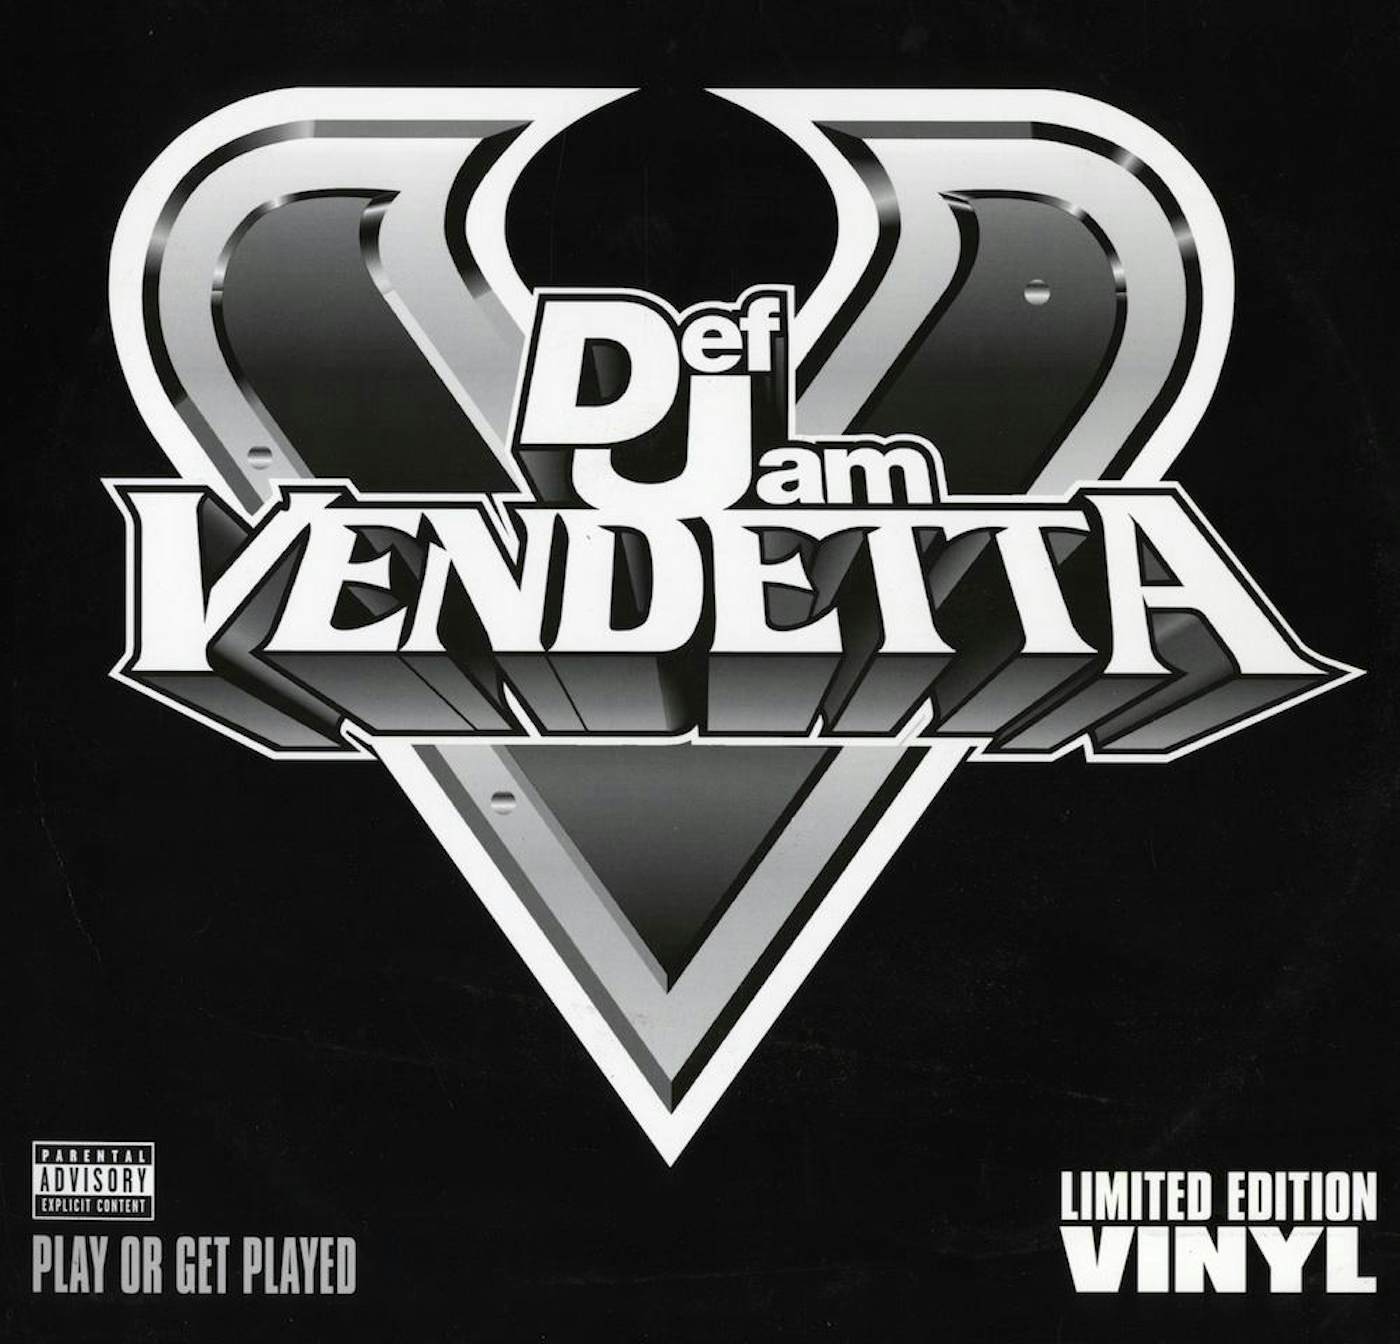 Def Jam Vendetta *Intro* (HD) 